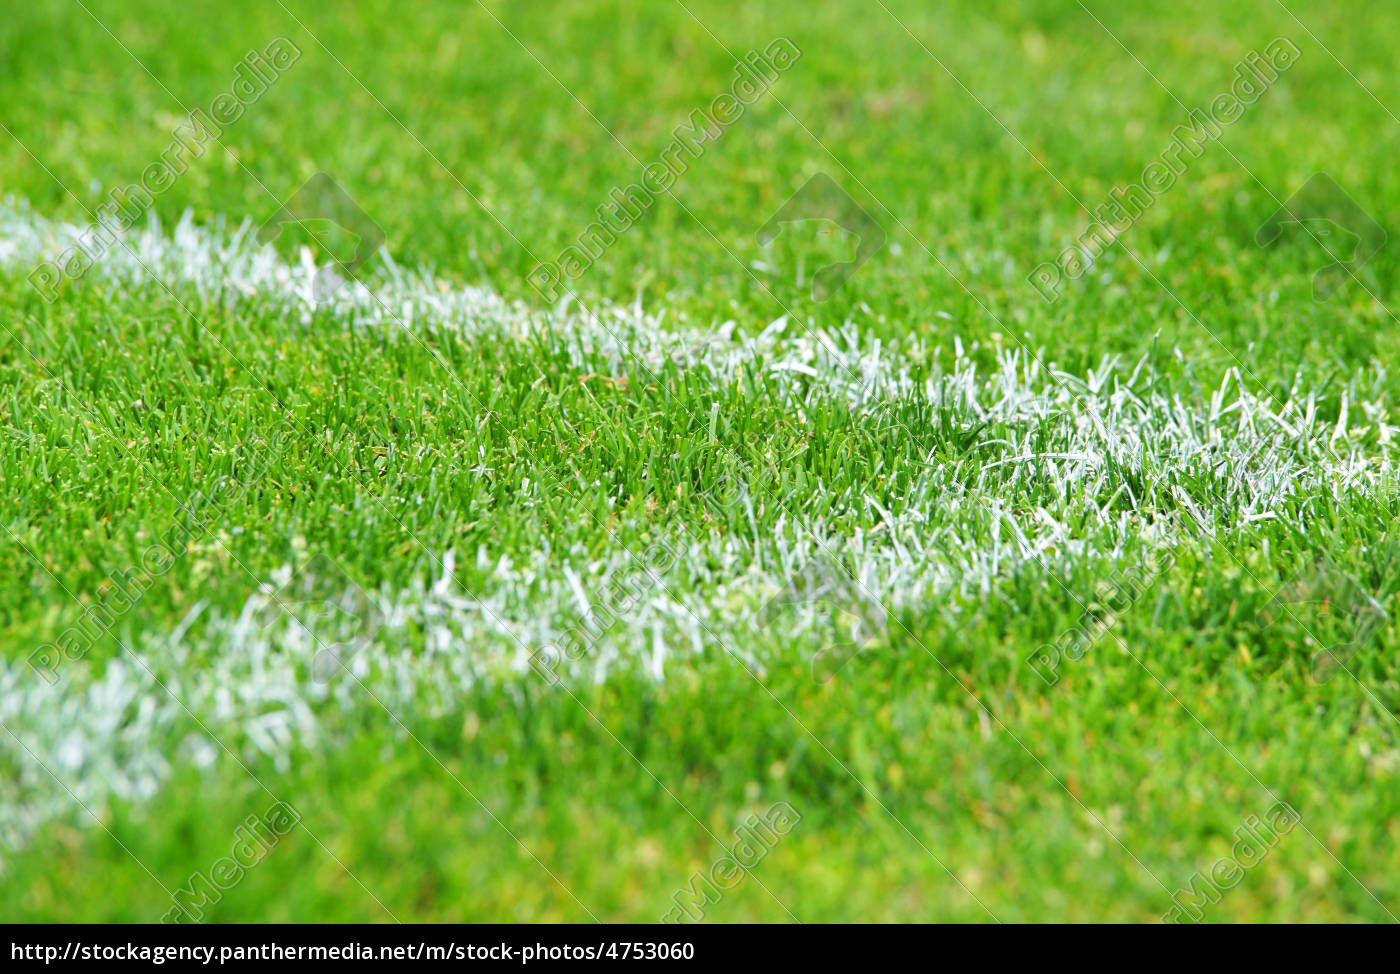 Fußball Ecke Rasen - Soccer Grass - Lizenzfreies Foto - #4753060